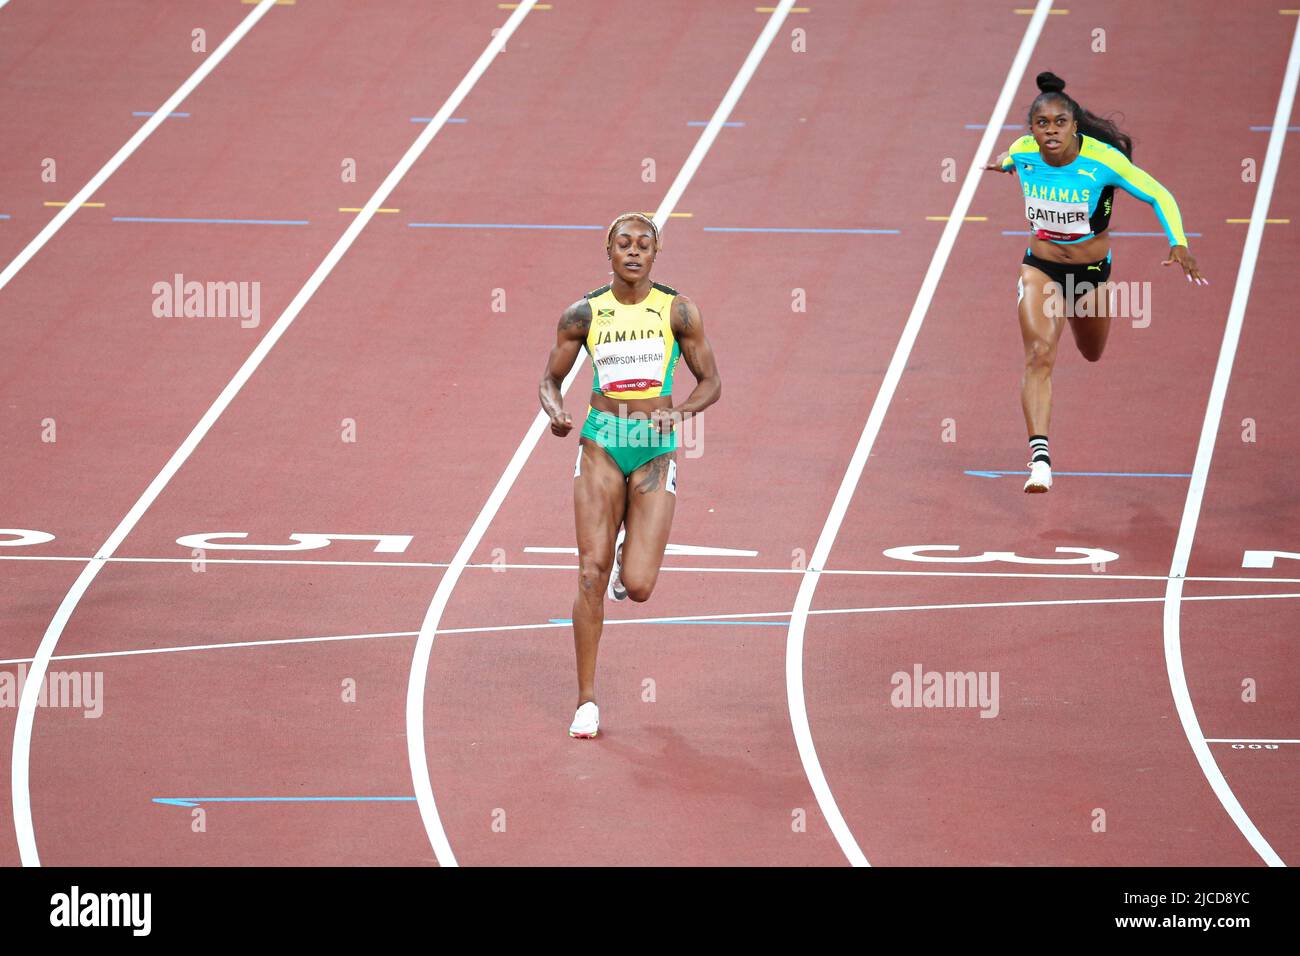 31st JUILLET 2021 - TOKYO, JAPON: Elaine Thompson-Herah de la Jamaïque et Tynia Gaither des Bahamas en action pendant les demi-finales des femmes de 100m au Tok Banque D'Images